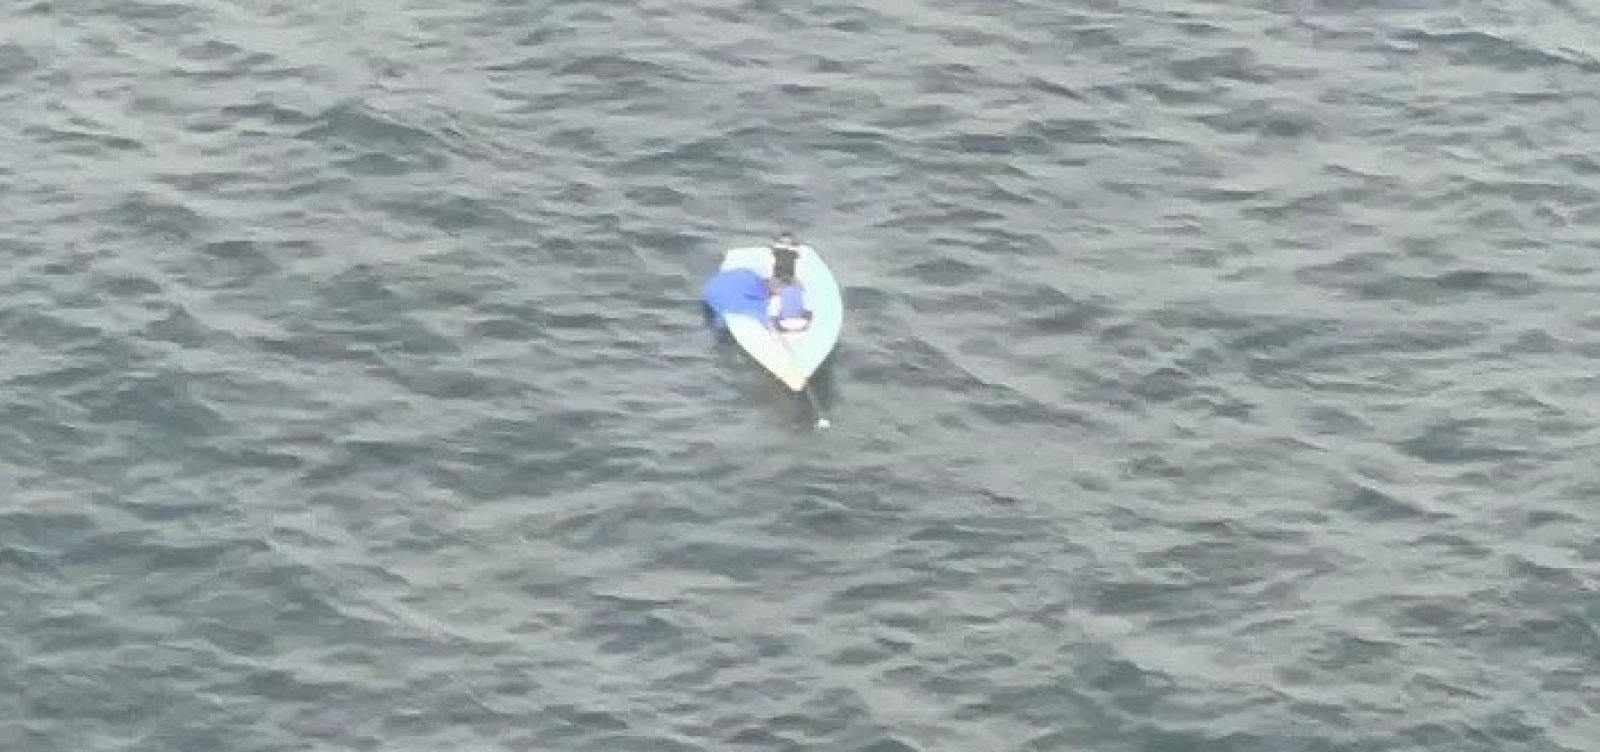 Velejadores são resgatados após 12h à deriva na Baía de Todos os Santos